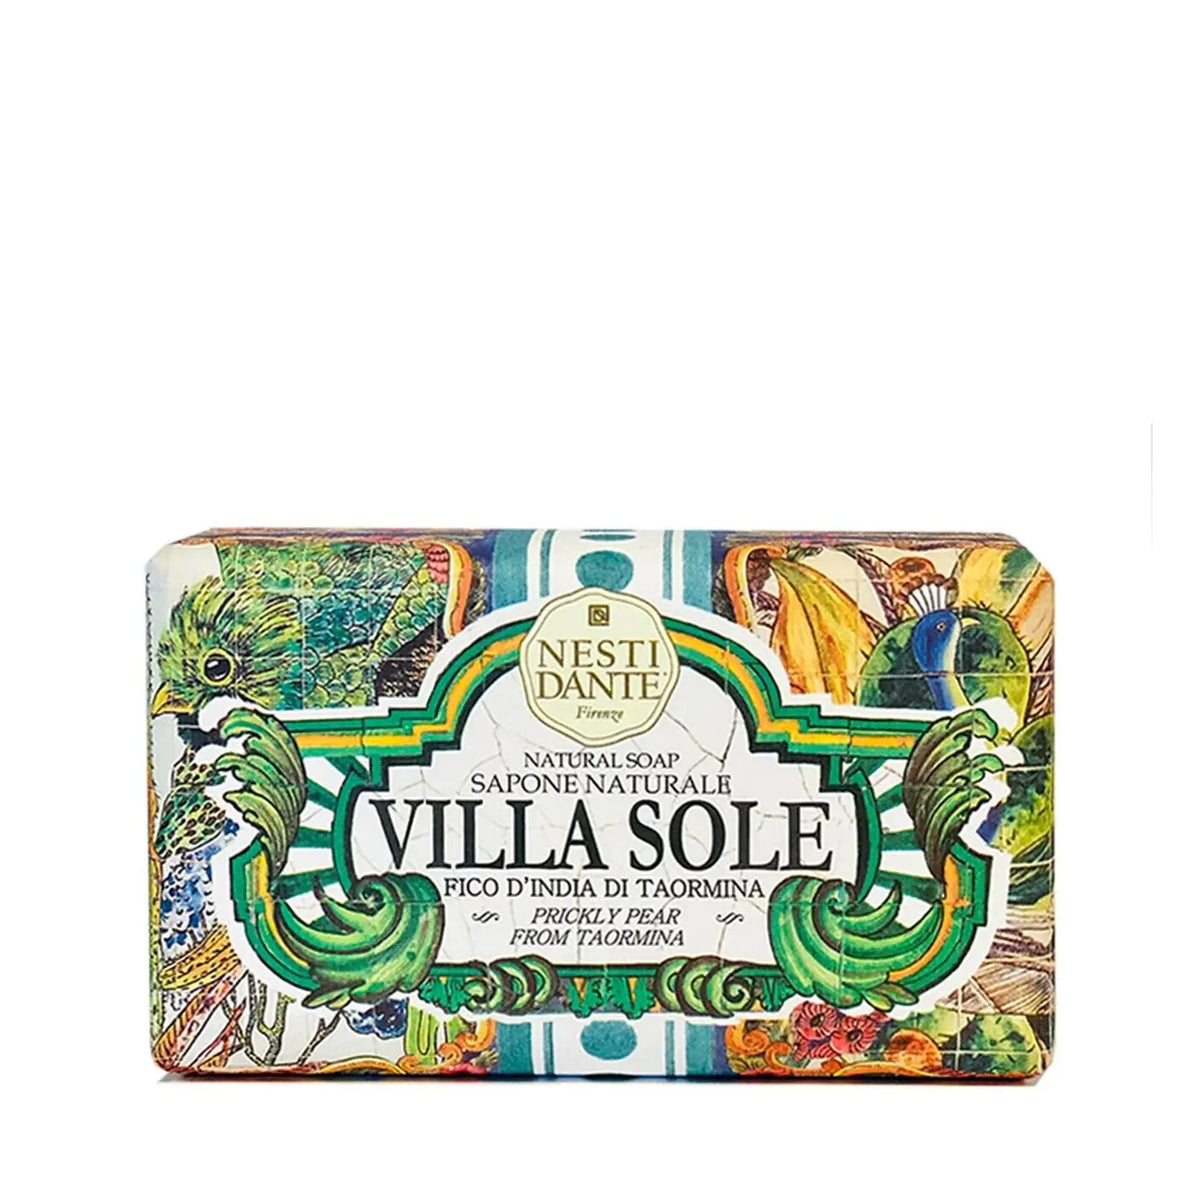 Nesti Dante Villa Sole (Fico d'India Di Taormina) 250g % | product_vendor%